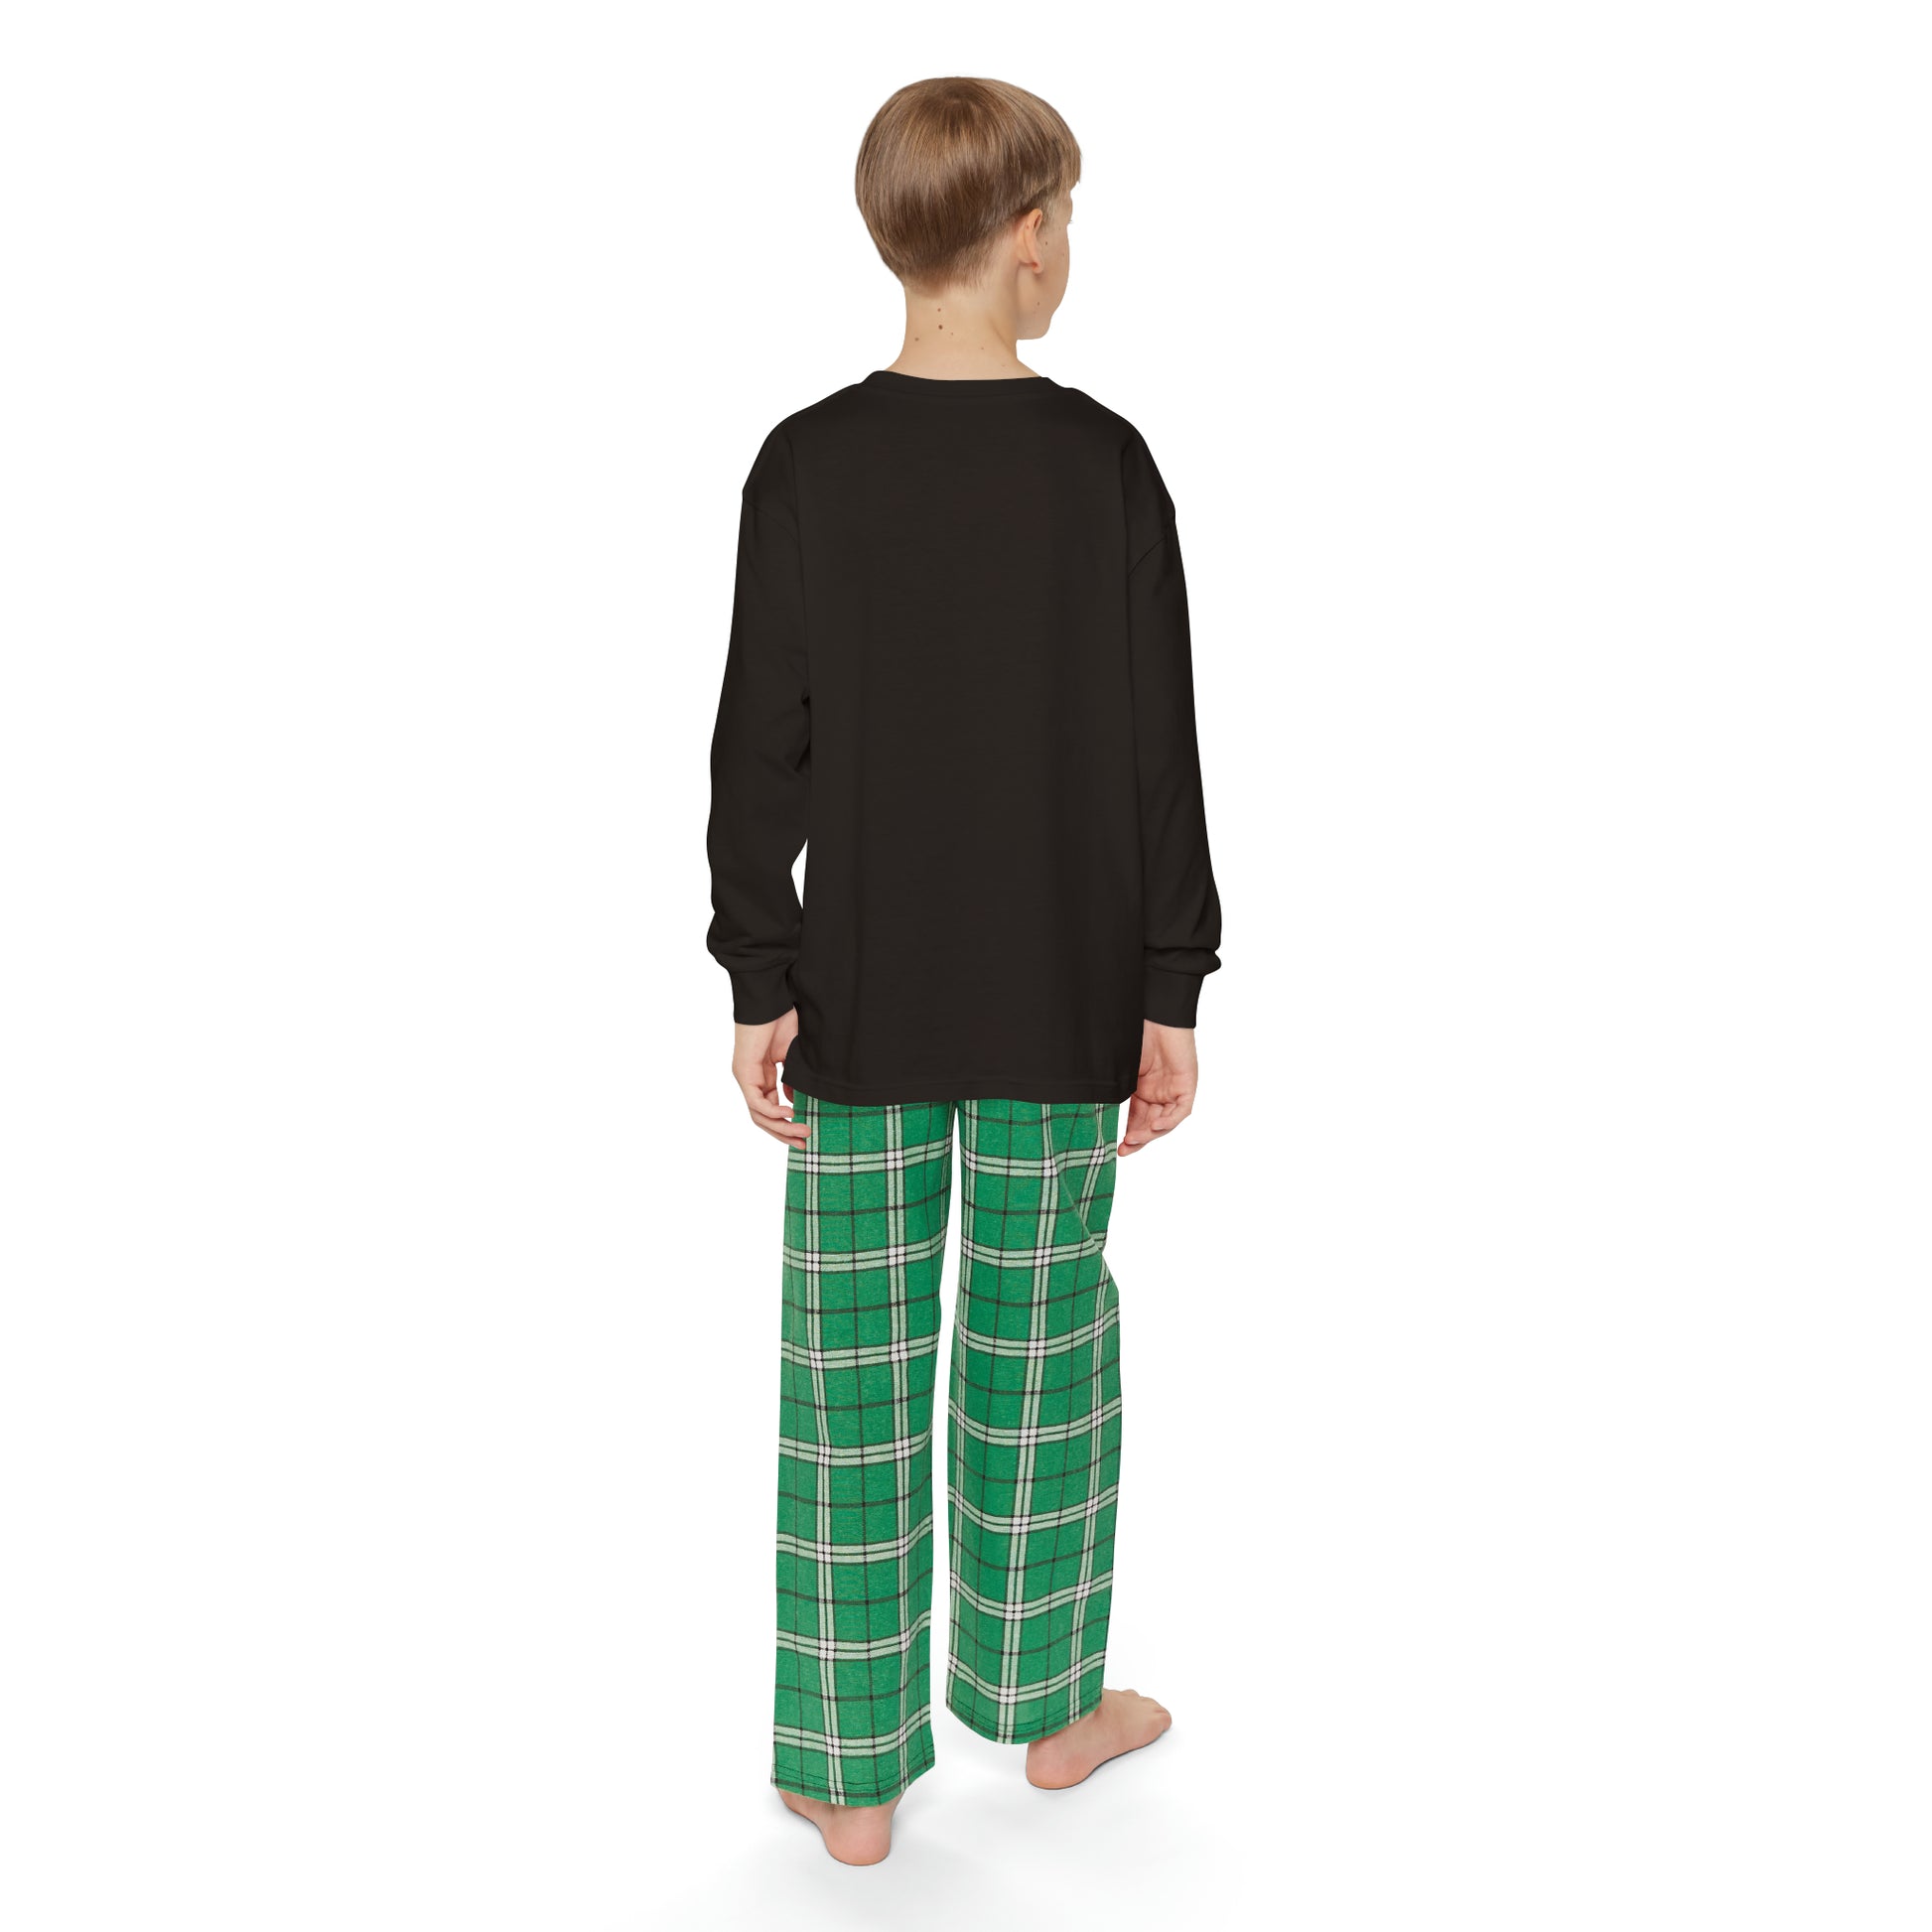 Child Of God Free Indeed Youth Christian Long Sleeve Pajama Set Printify